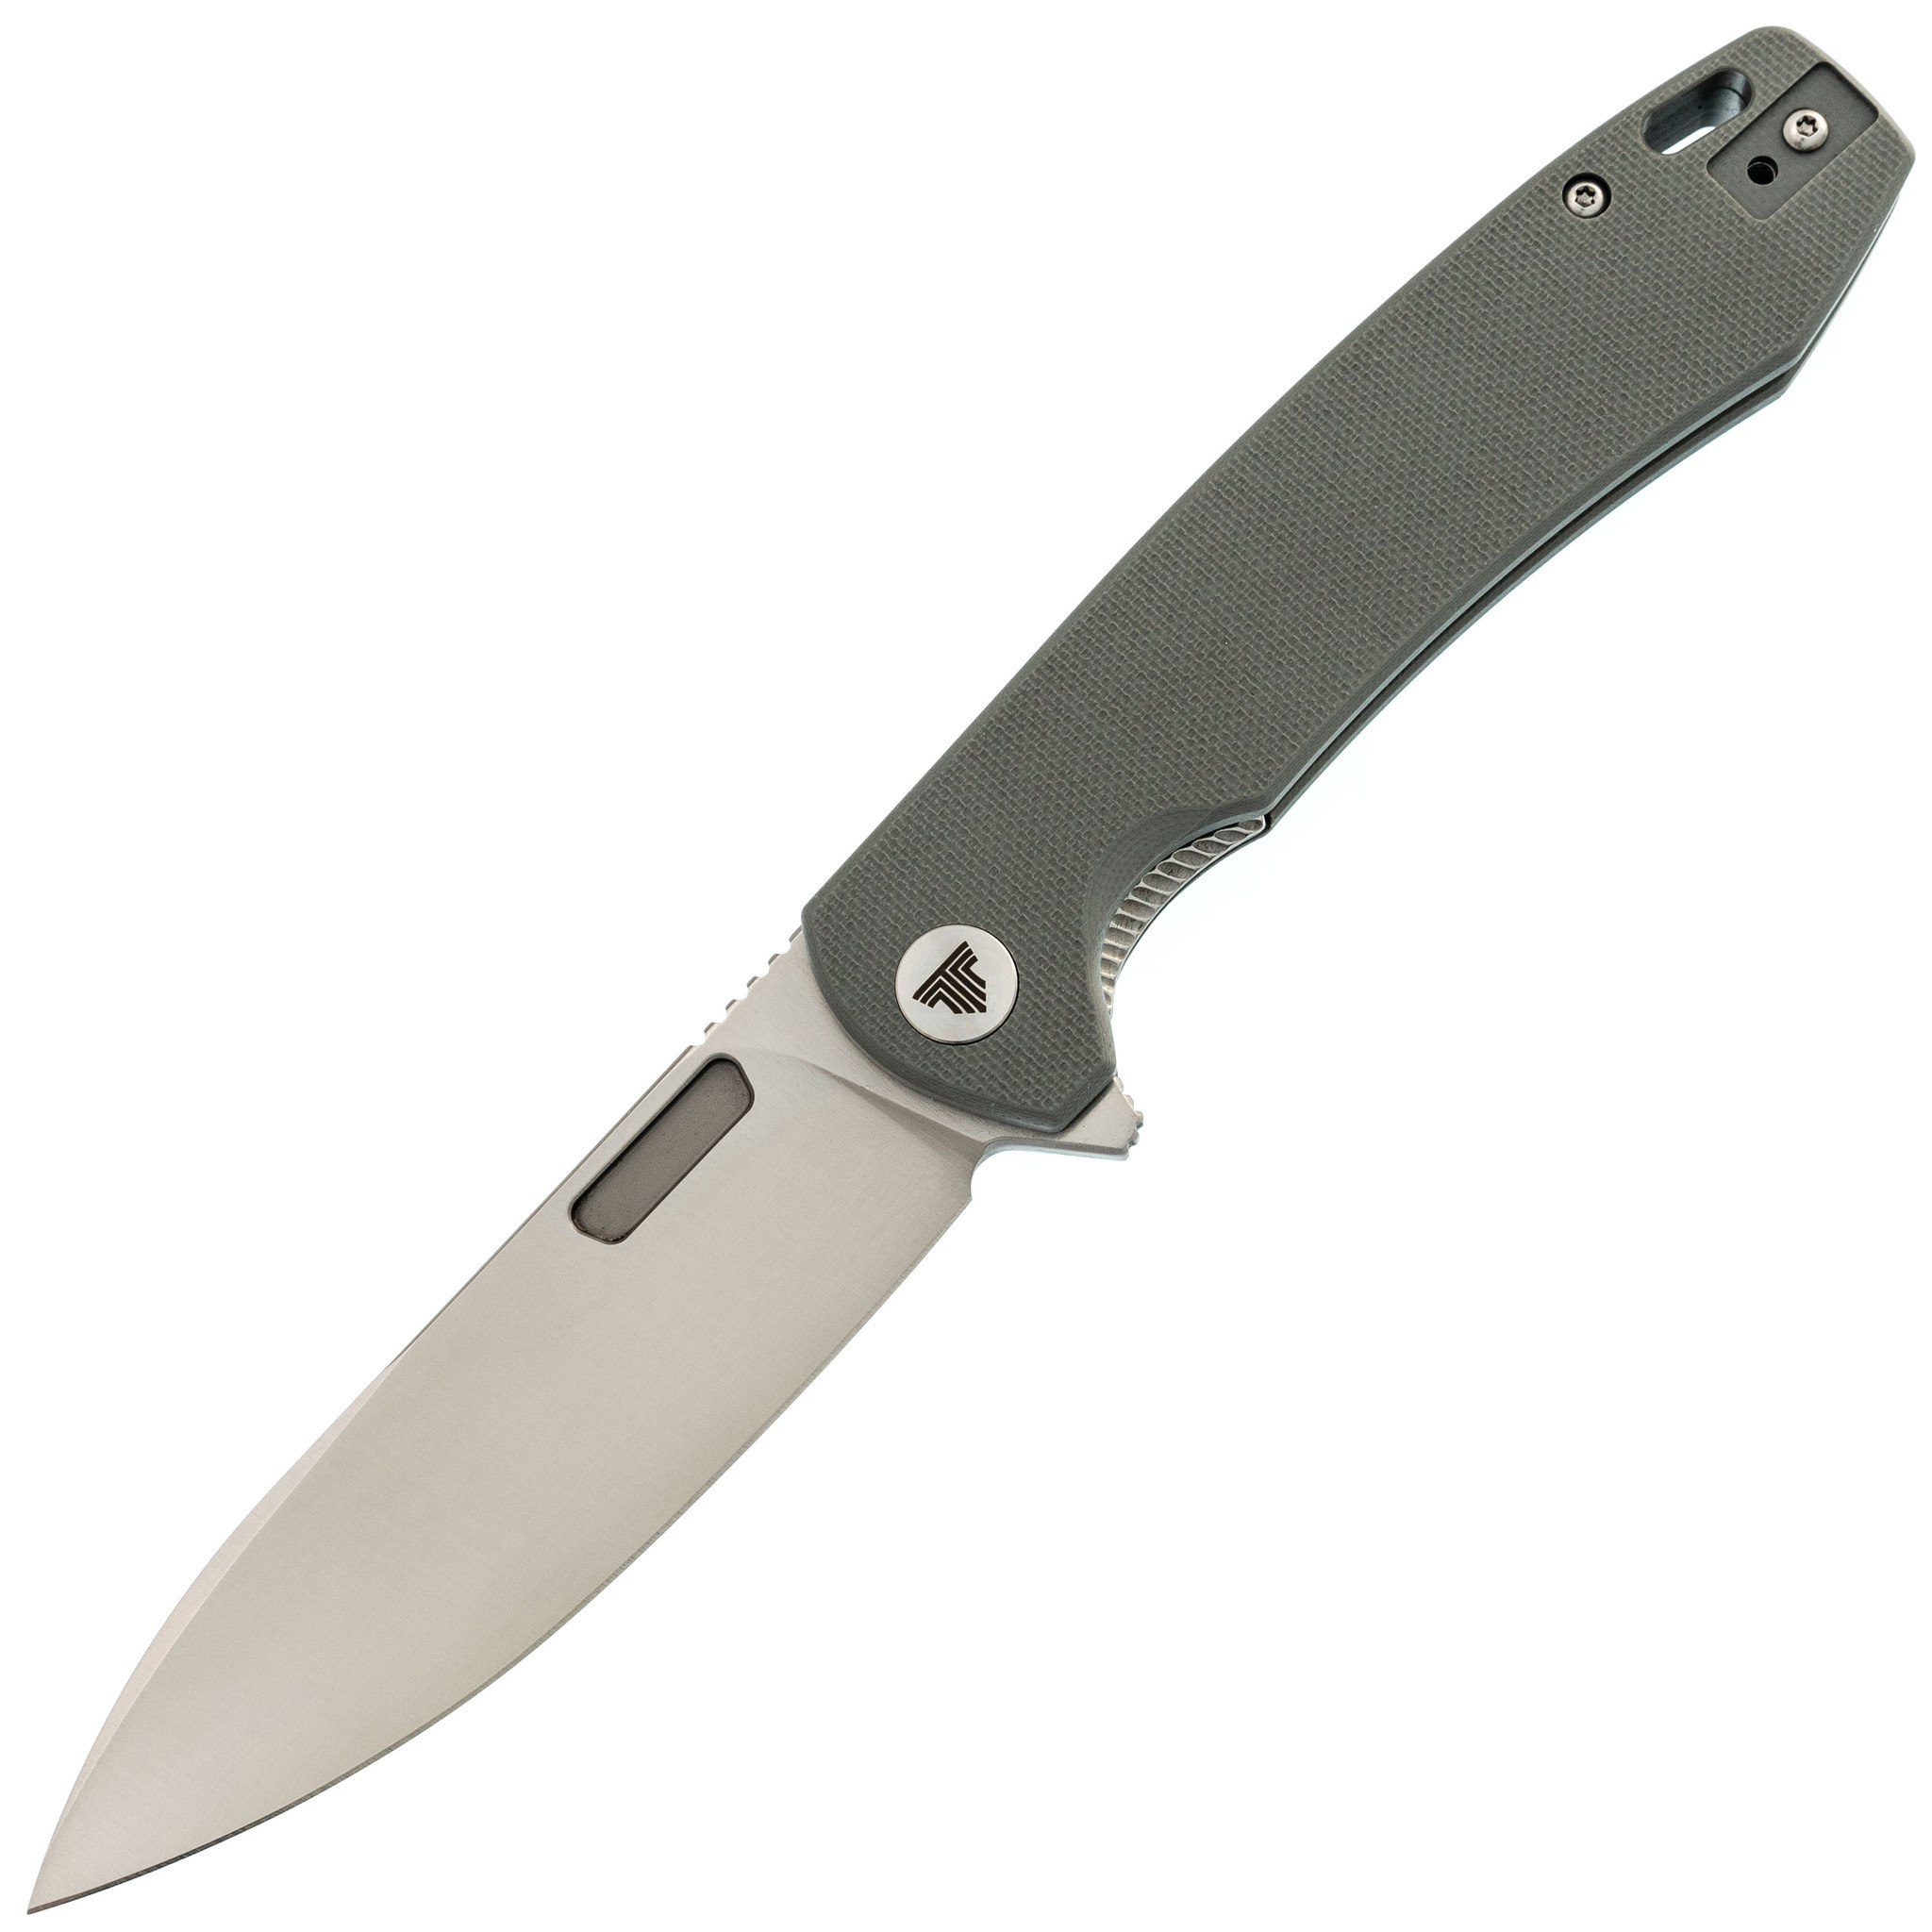 Складной нож Trivisa Columba-03gr, сталь 14C28N, рукоять G10, серый, Бренды